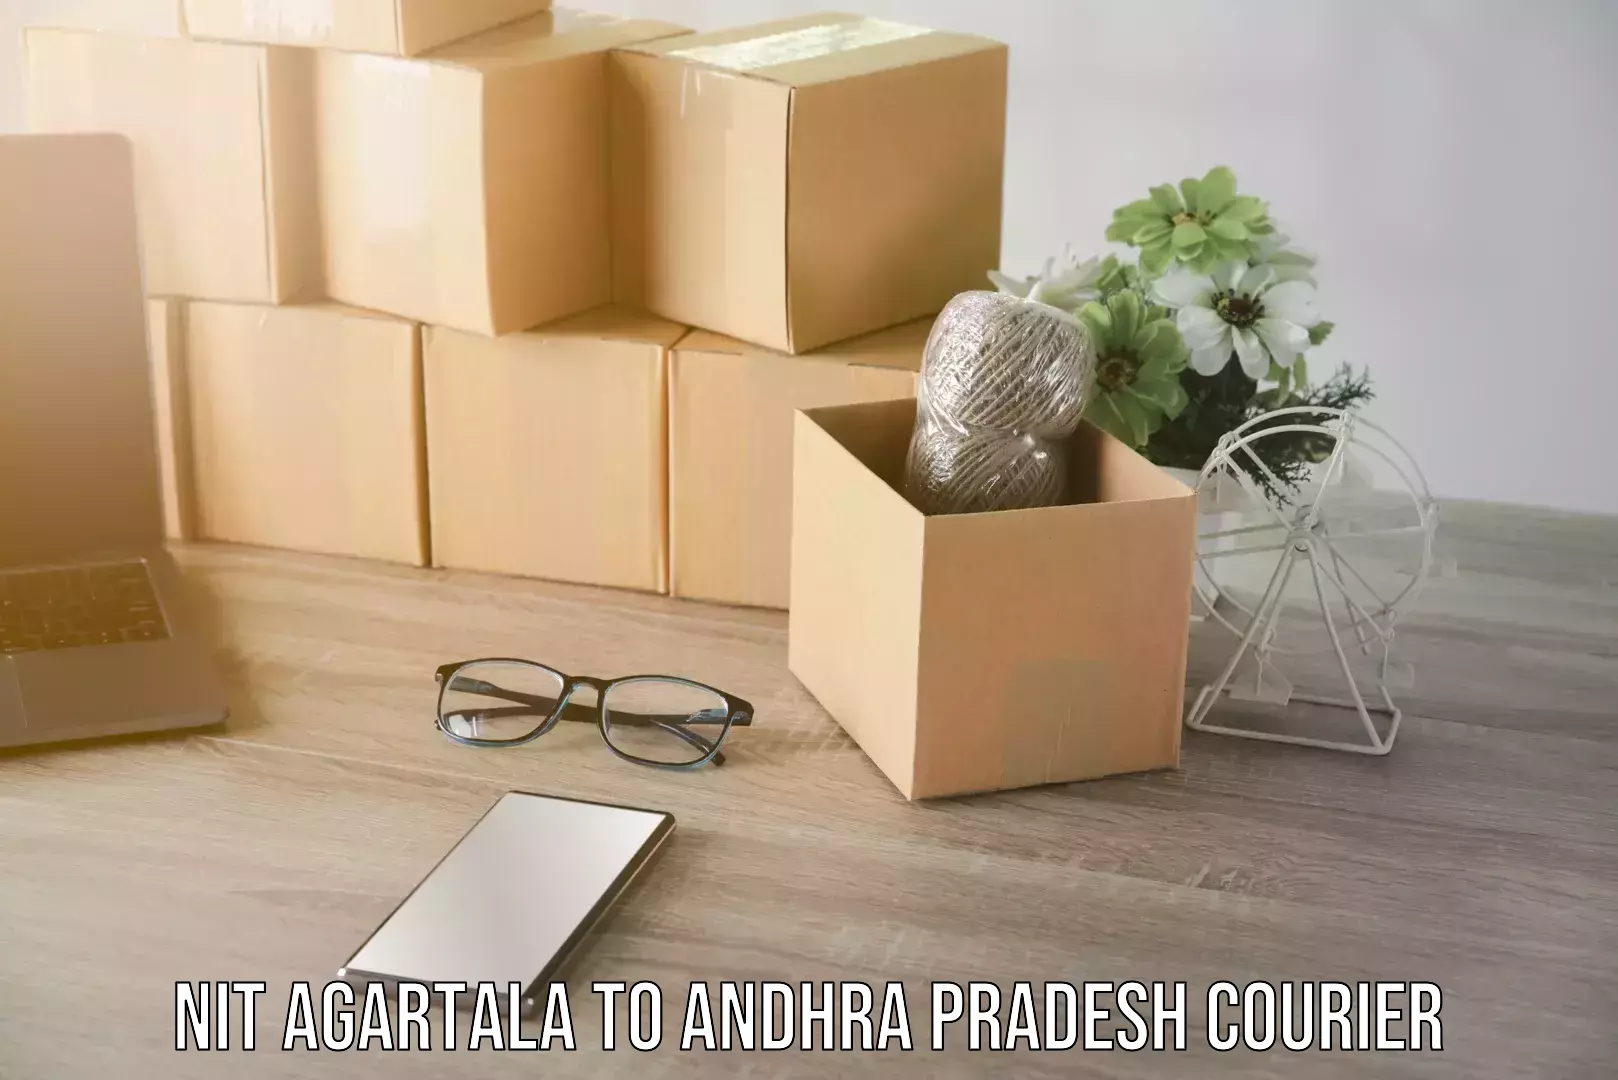 Holiday shipping services NIT Agartala to Andhra Pradesh